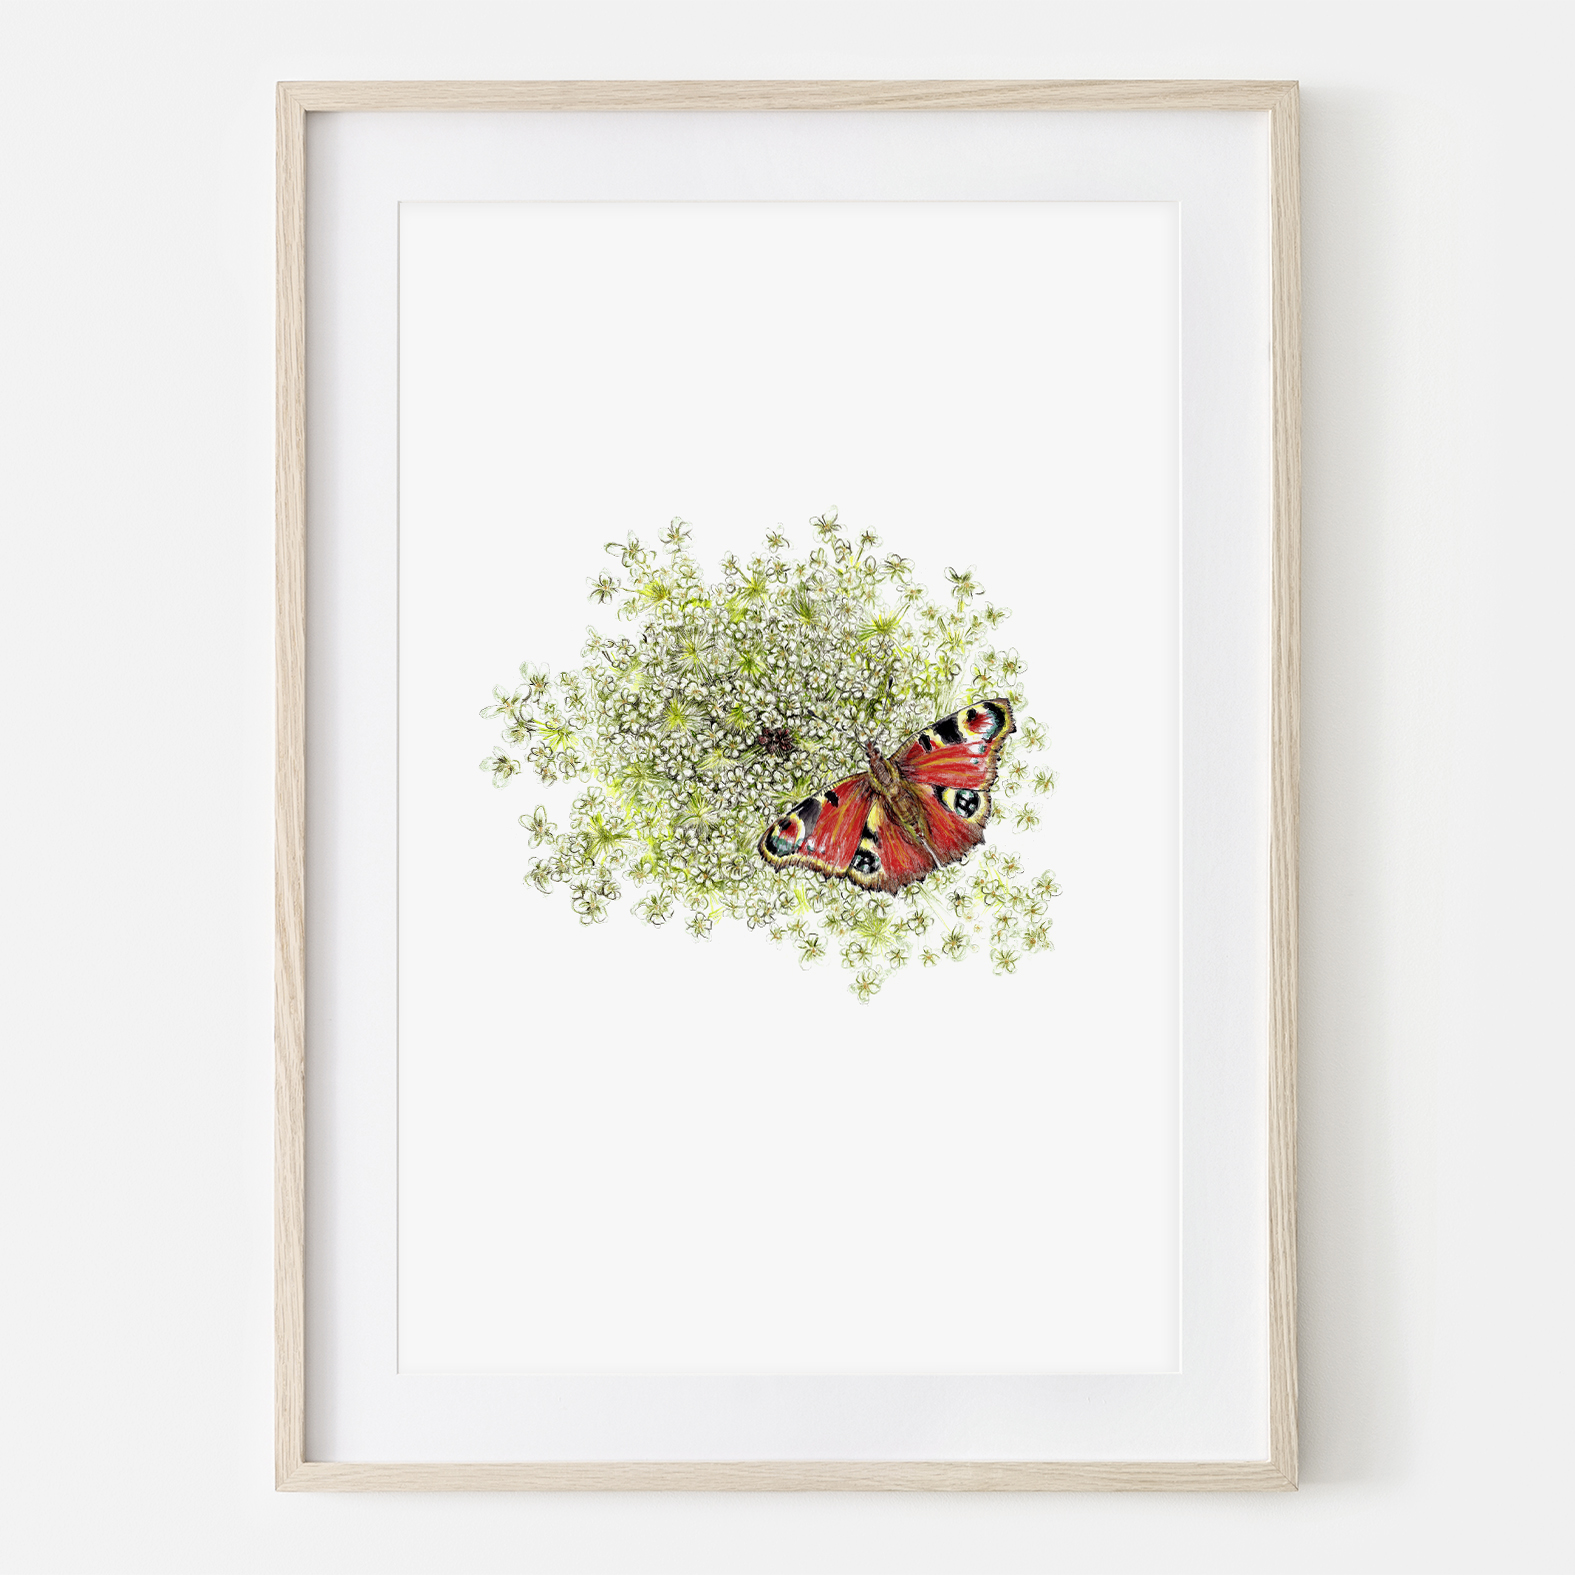 Wilde Möhre mit Schmetterling, Fine Art Print, Giclée Print, Poster, Kunstdruck, Pflanzen Zeichnun